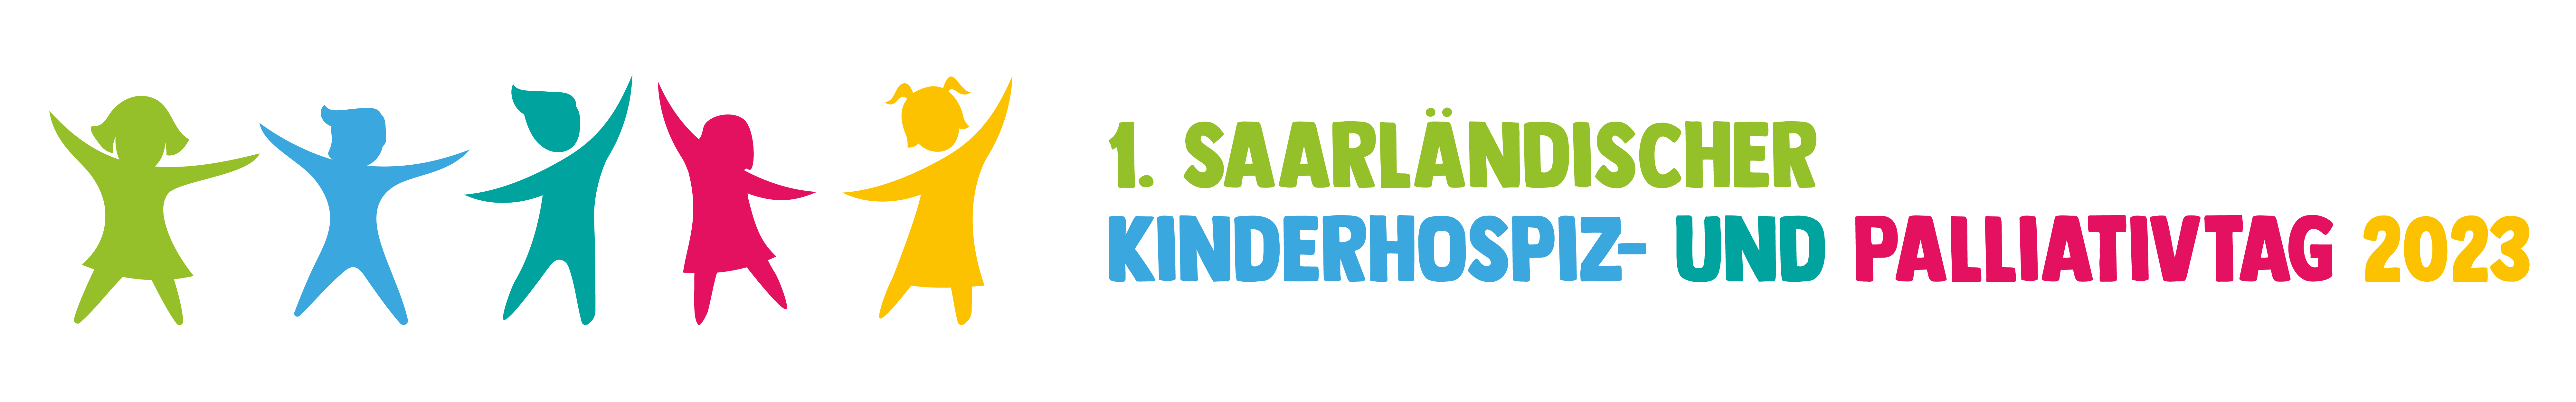 1. Saarländischer Kinderhospiz und Palliativtag 2023